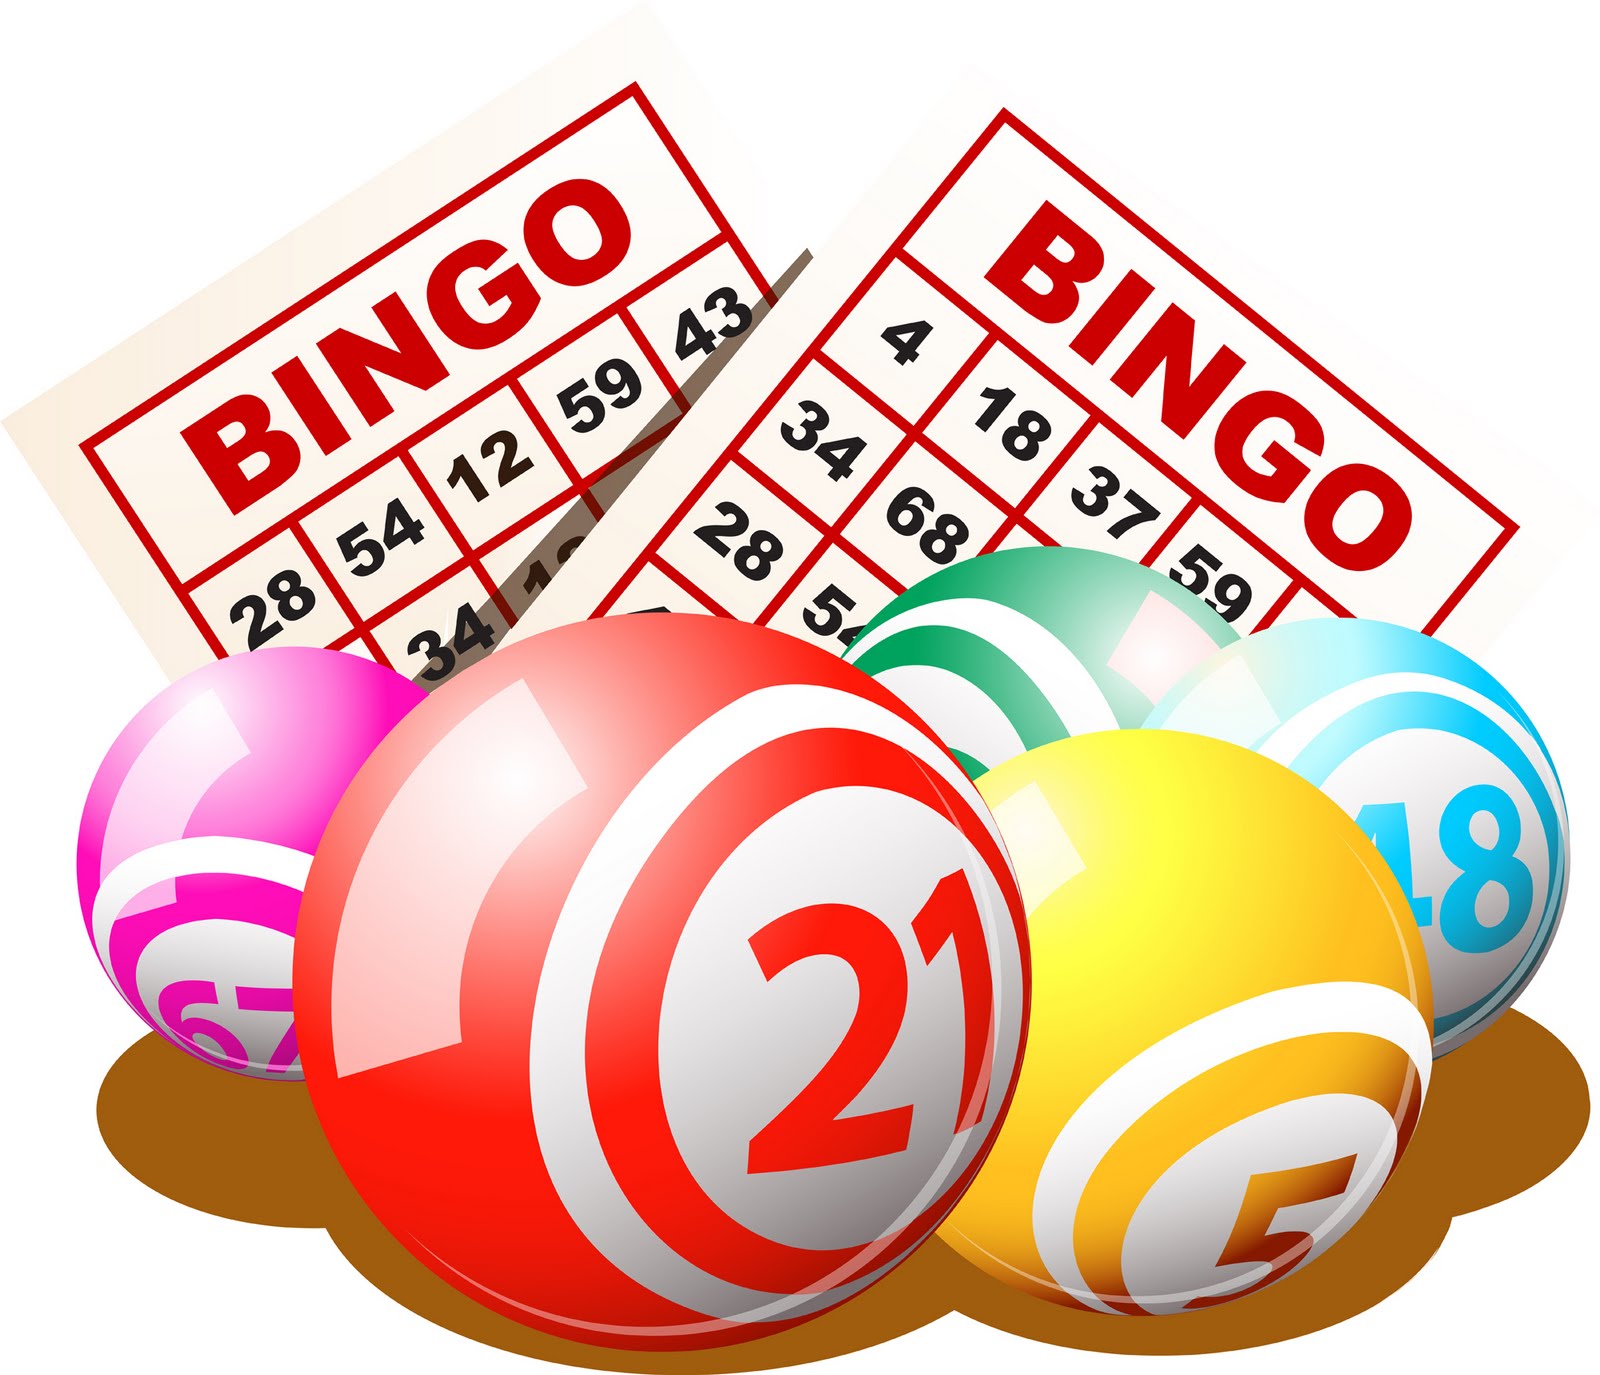 bingo2